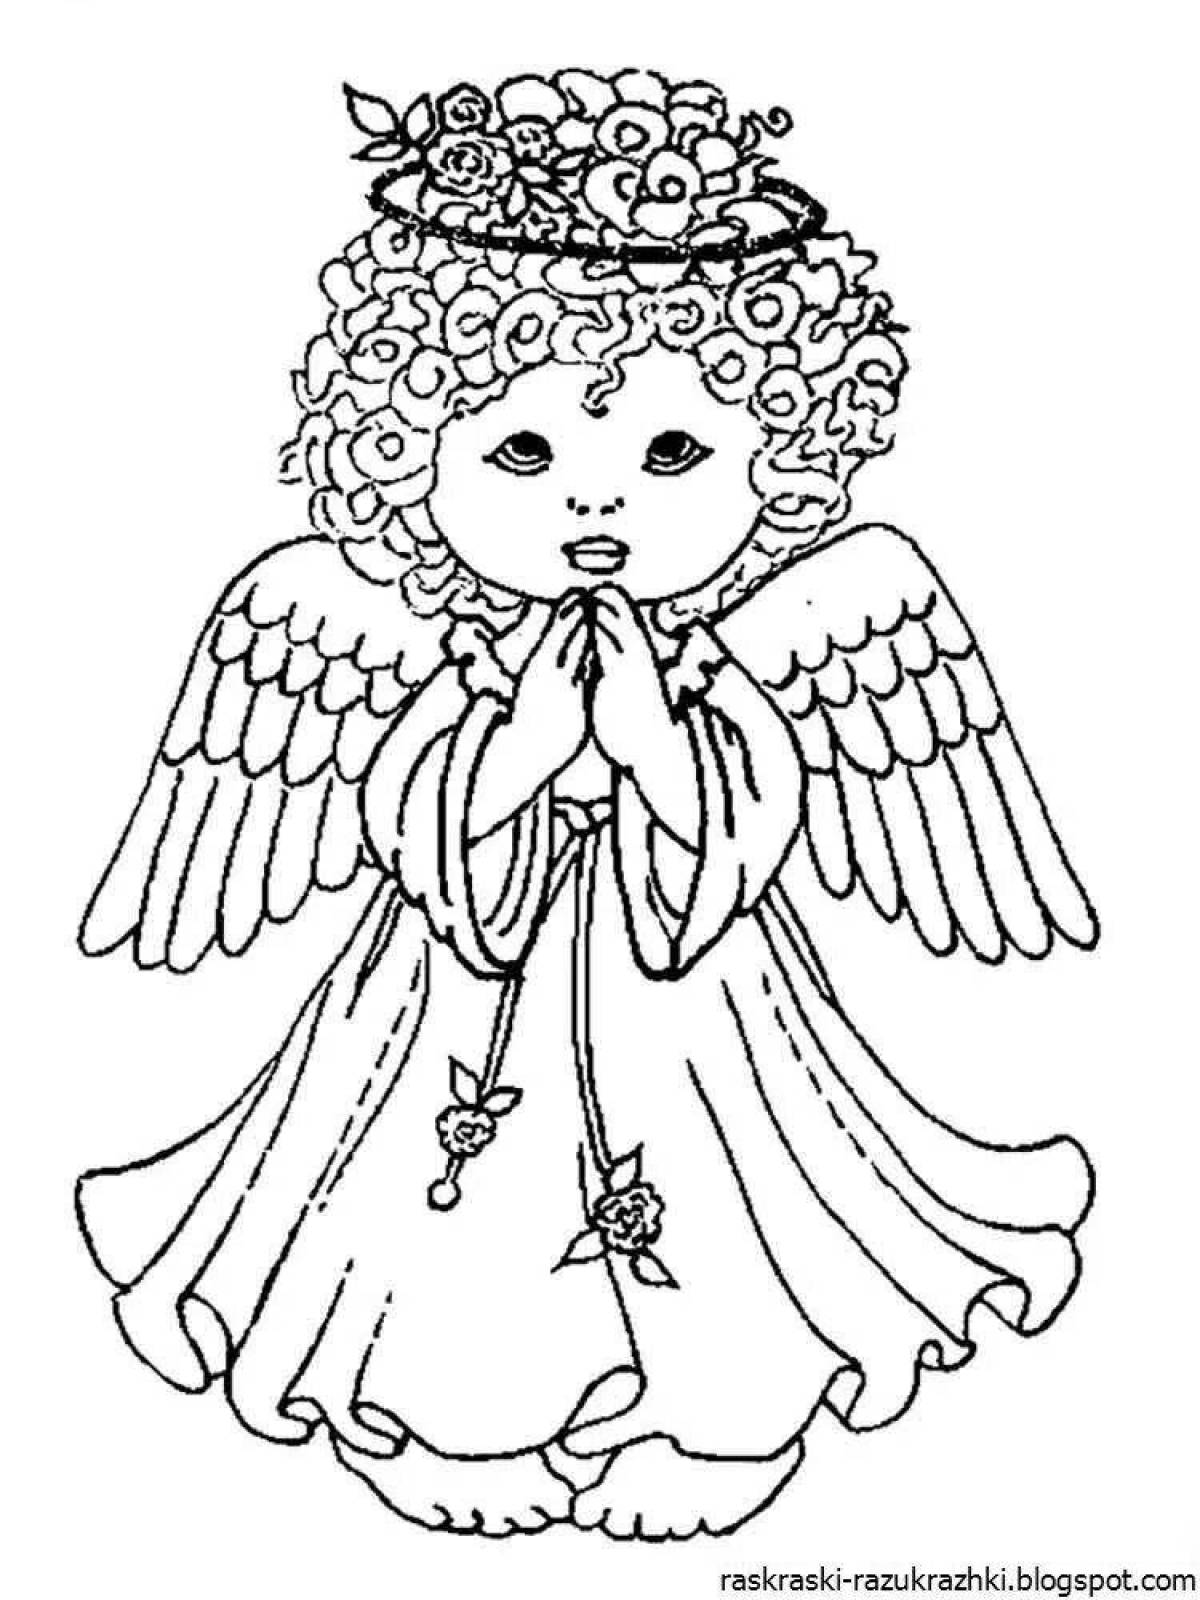 Children's angel #1